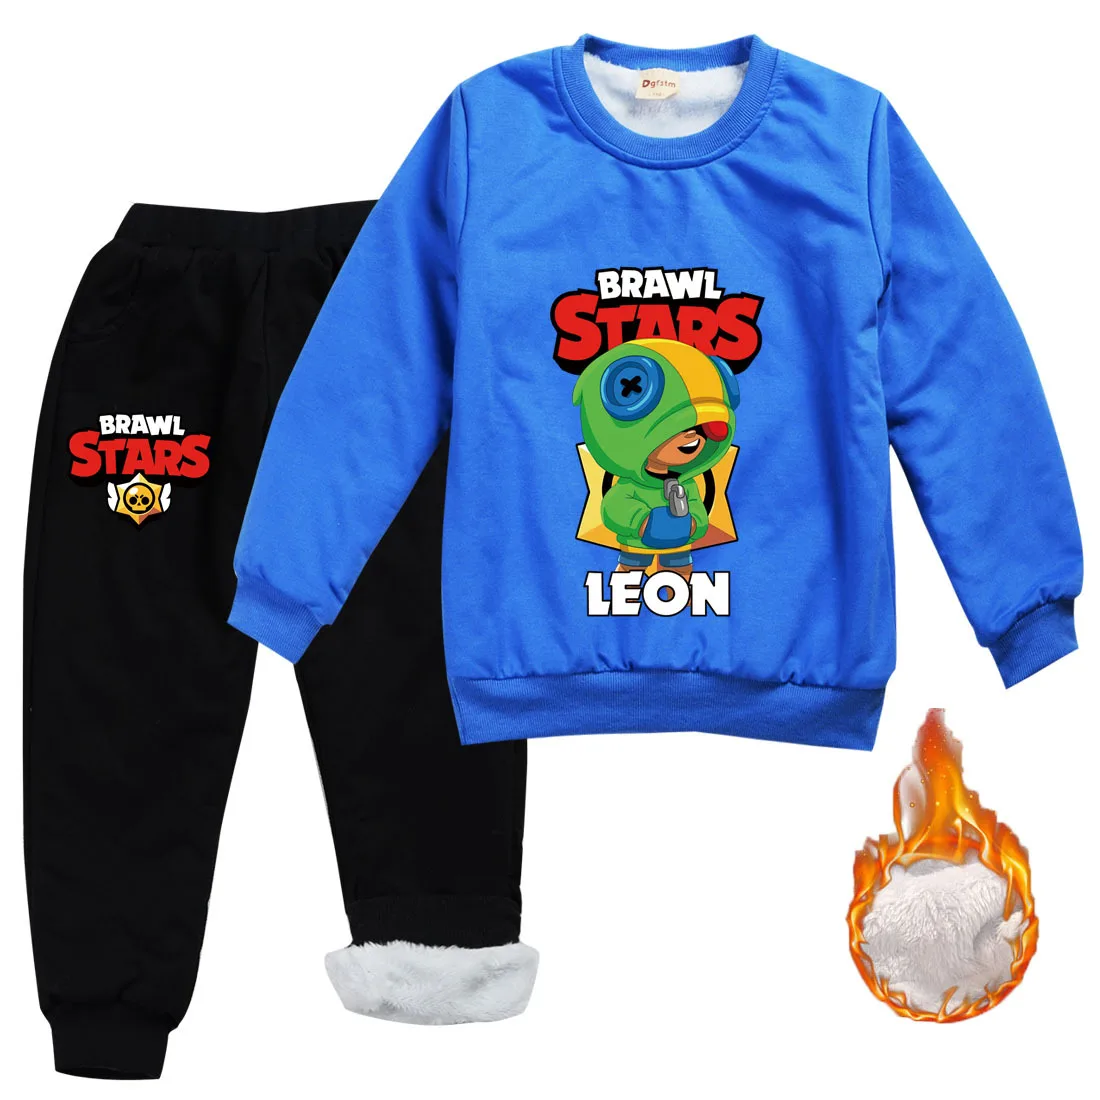 Fotelik bawełnianej płaszcz kurtka zestaw brawls stars kid kapturem bluza game leon anime odzież Spodnie z polar na świąteczny prezent